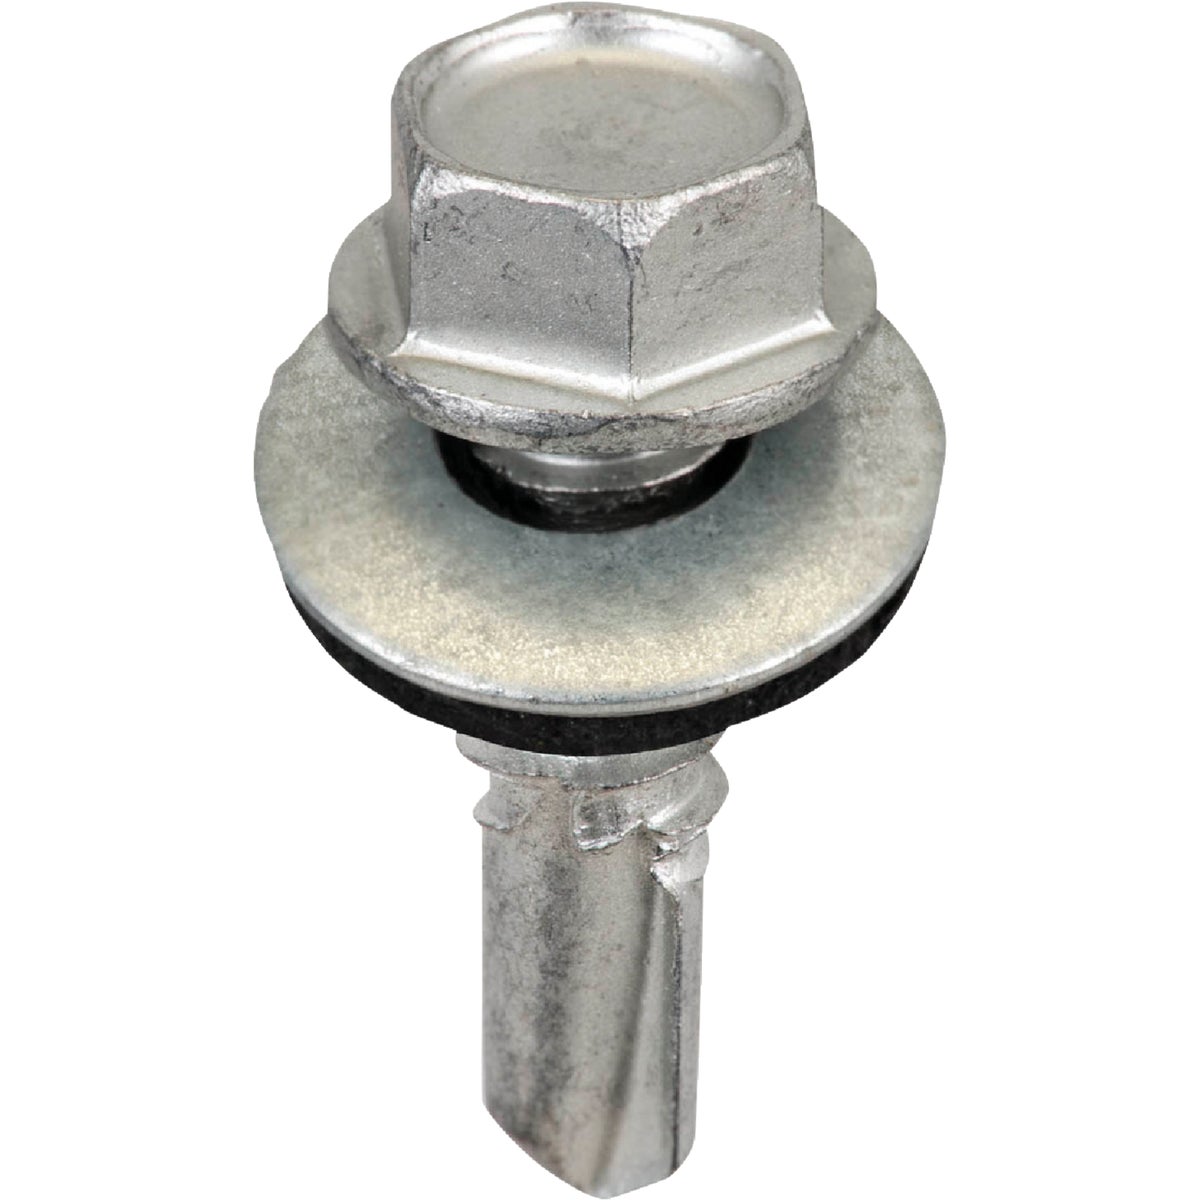 Item 201301, #14 x 7/8 In. Galvanized Lap screw. C1022 steel. 1,000 hour Dacro coating.